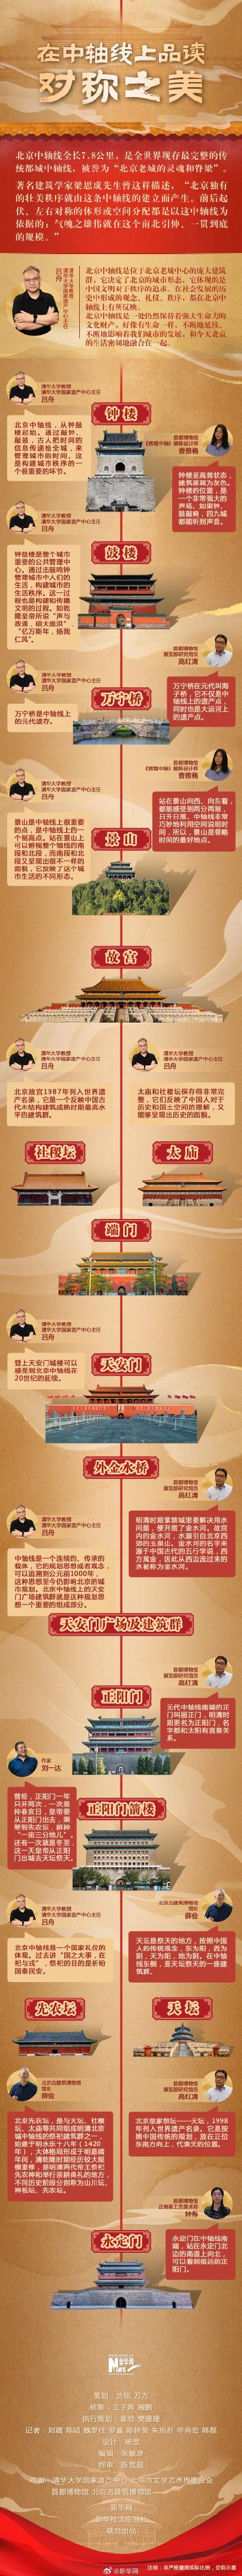 《操逼视频无码》在北京中轴线上品读对称之美 世界遗产新杰作